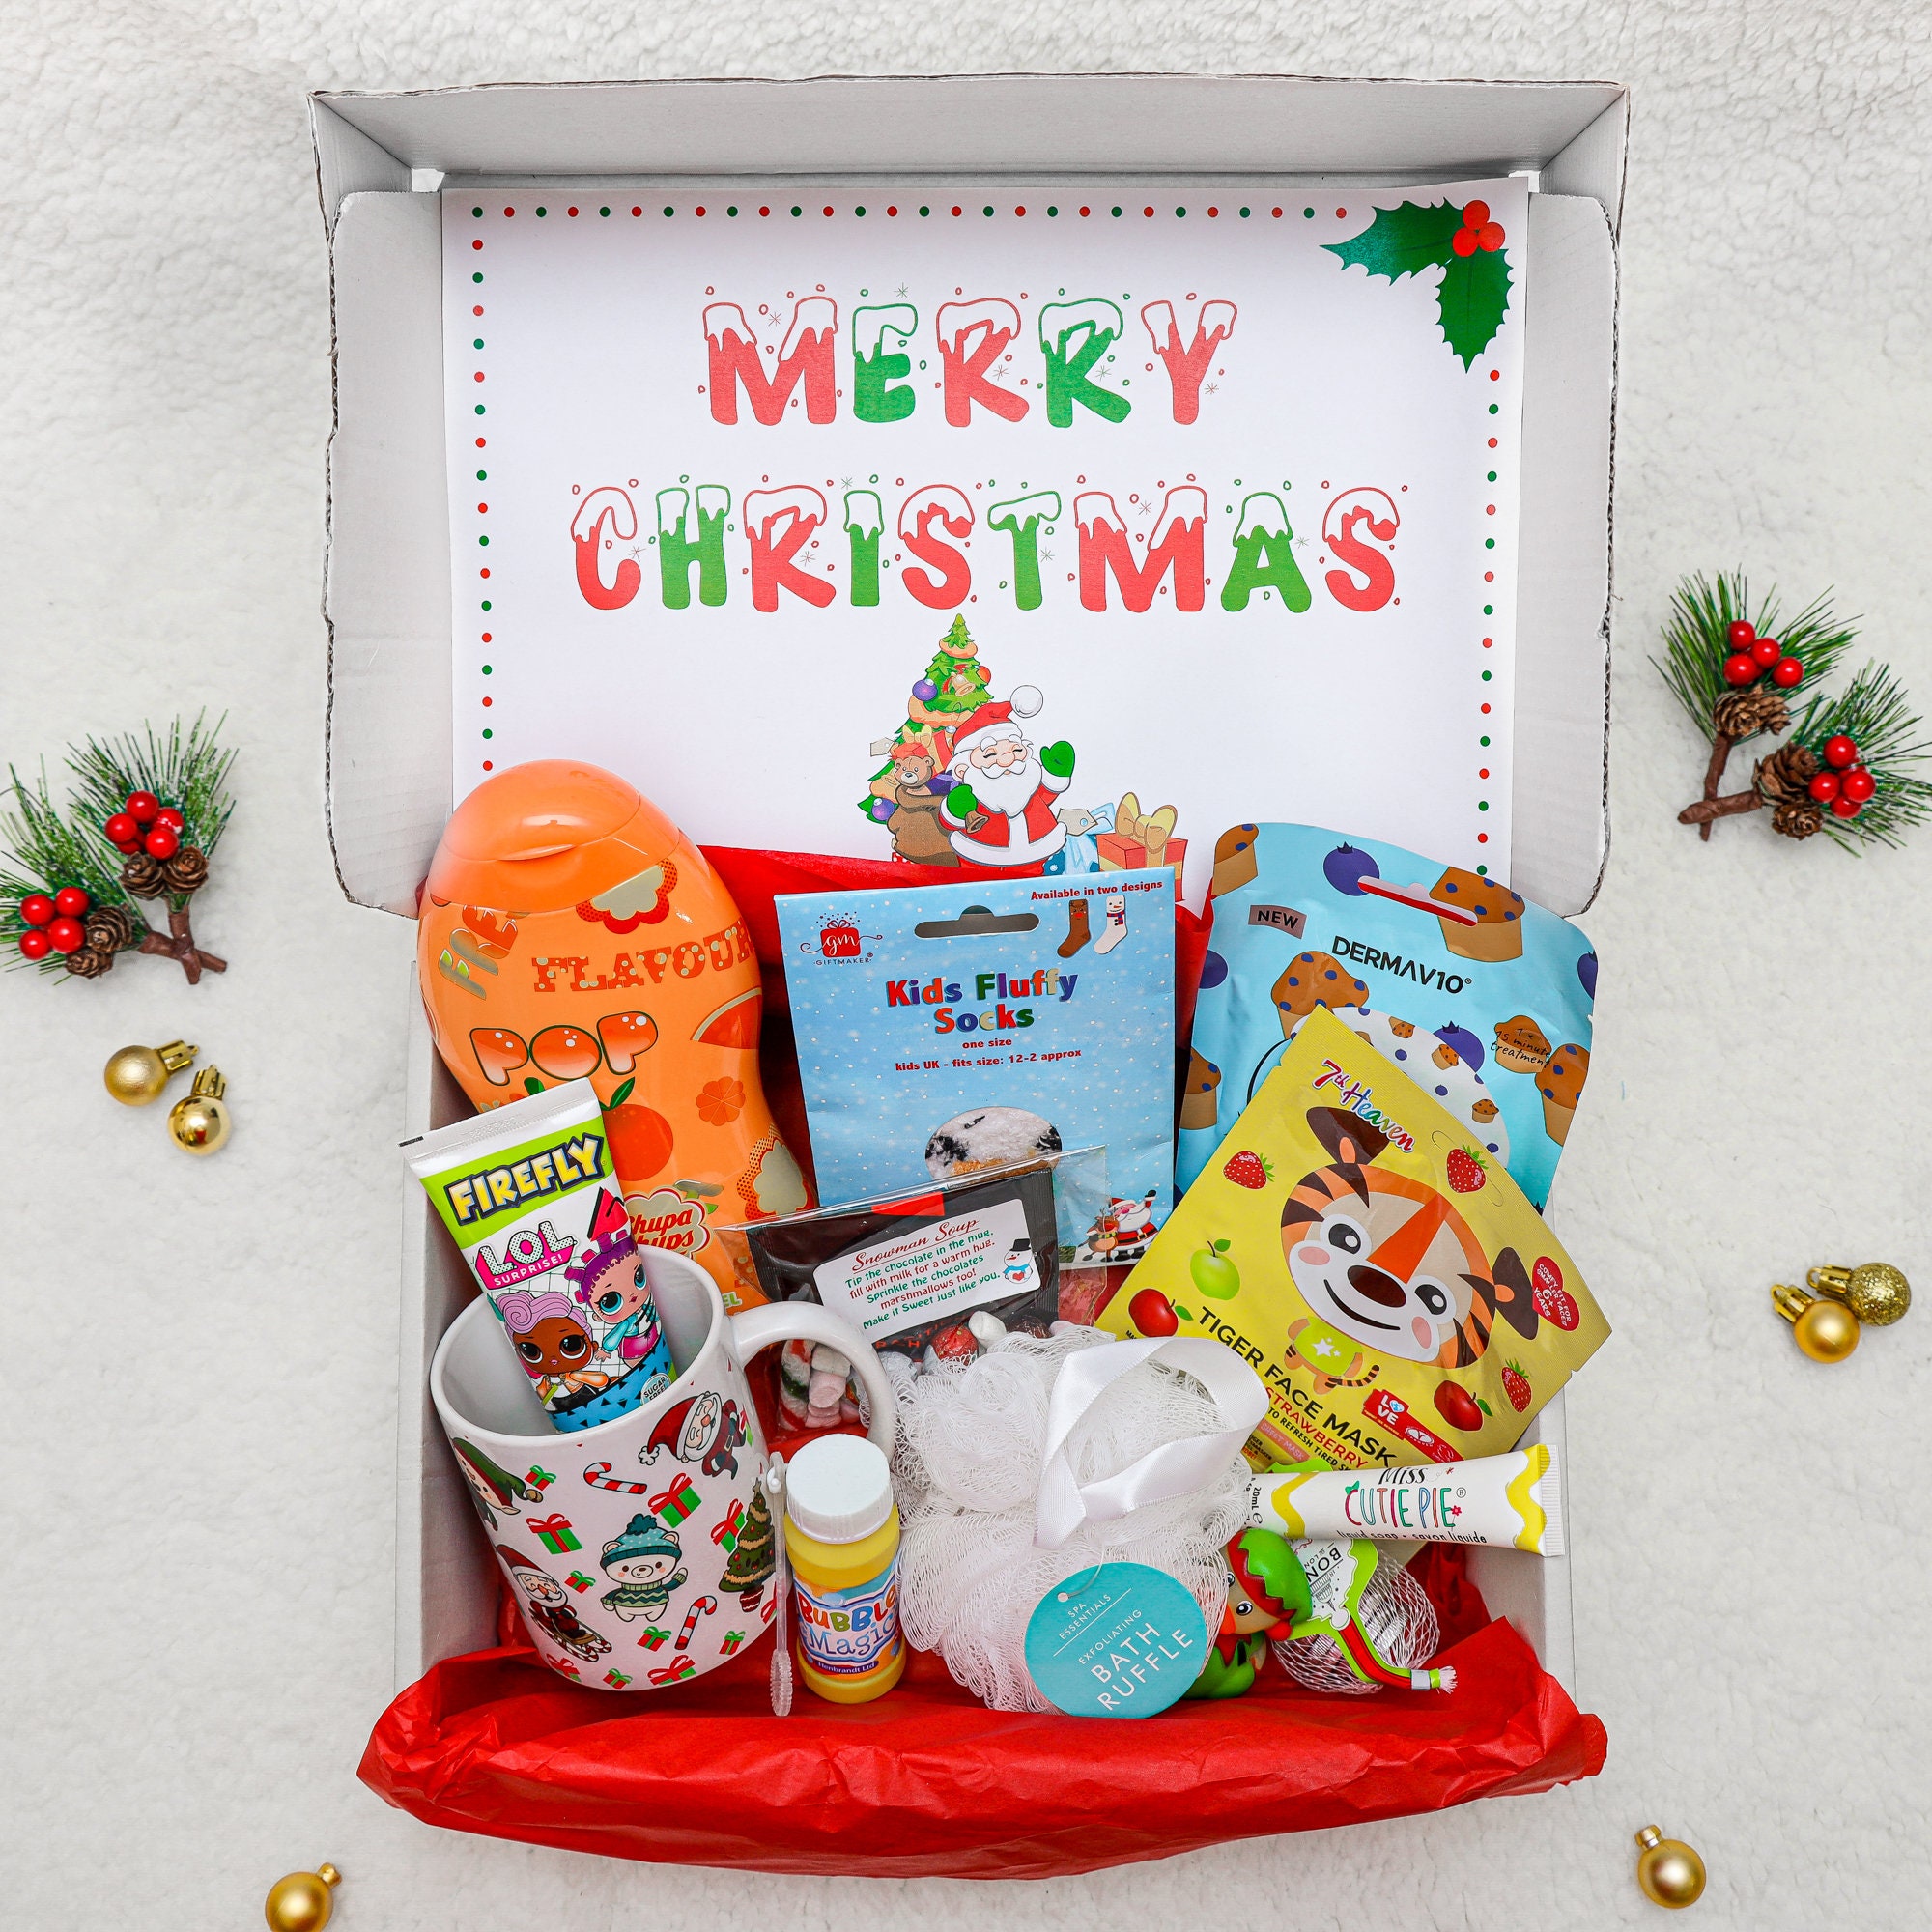 Kit chocolat chaud à offrir #Noël #Wesco  Noel, Paniers cadeaux de noël,  Idee cadeau noel